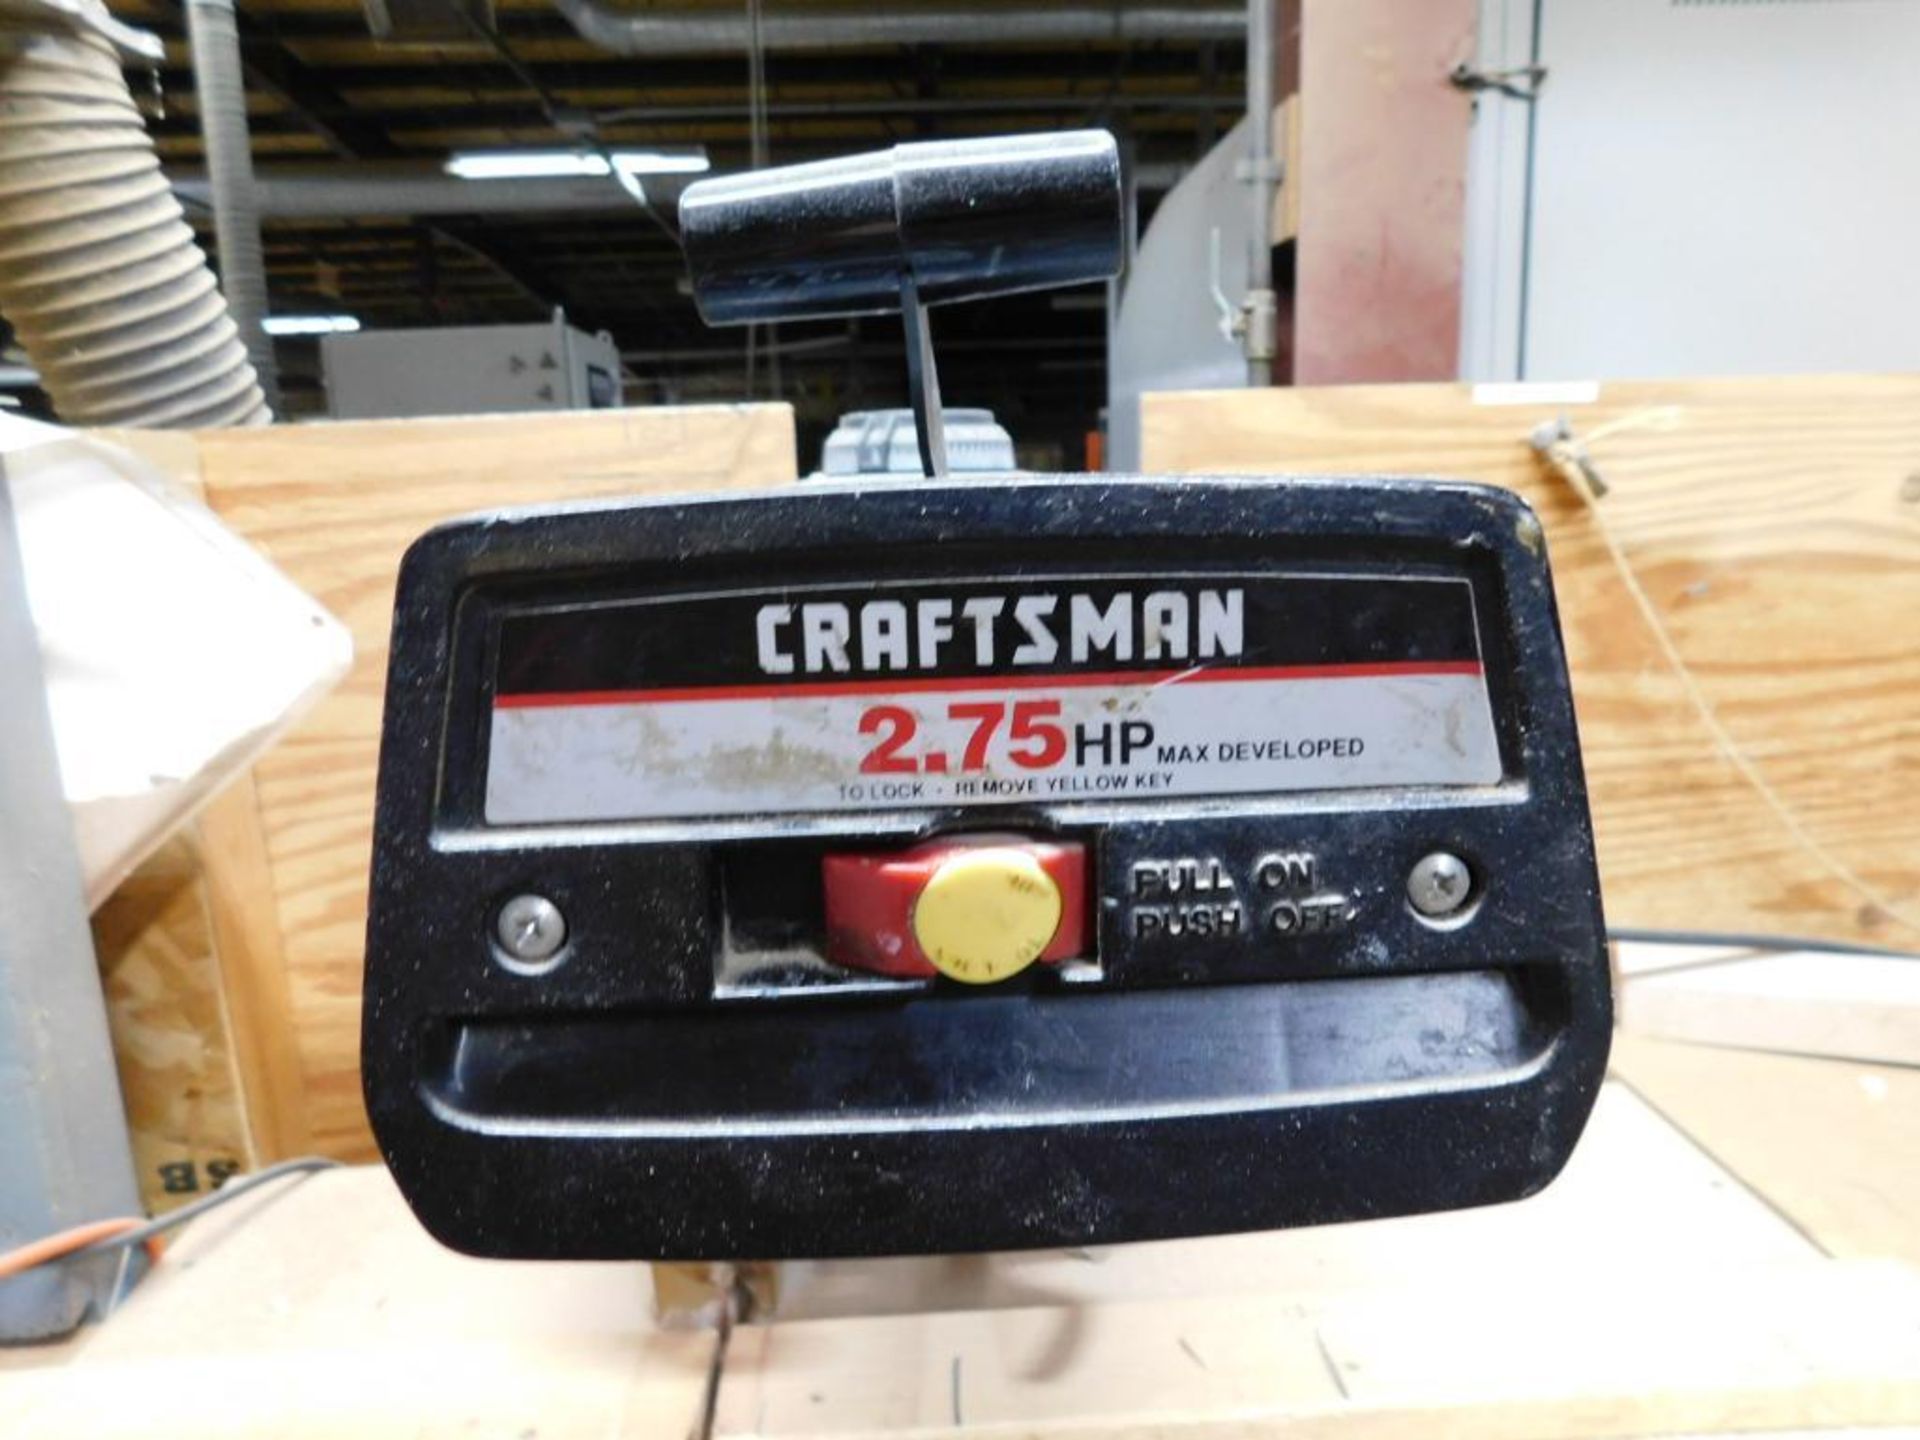 Craftsman 10" Radial Arm Saw, S/N 2937, 2.75 HP - Image 7 of 7